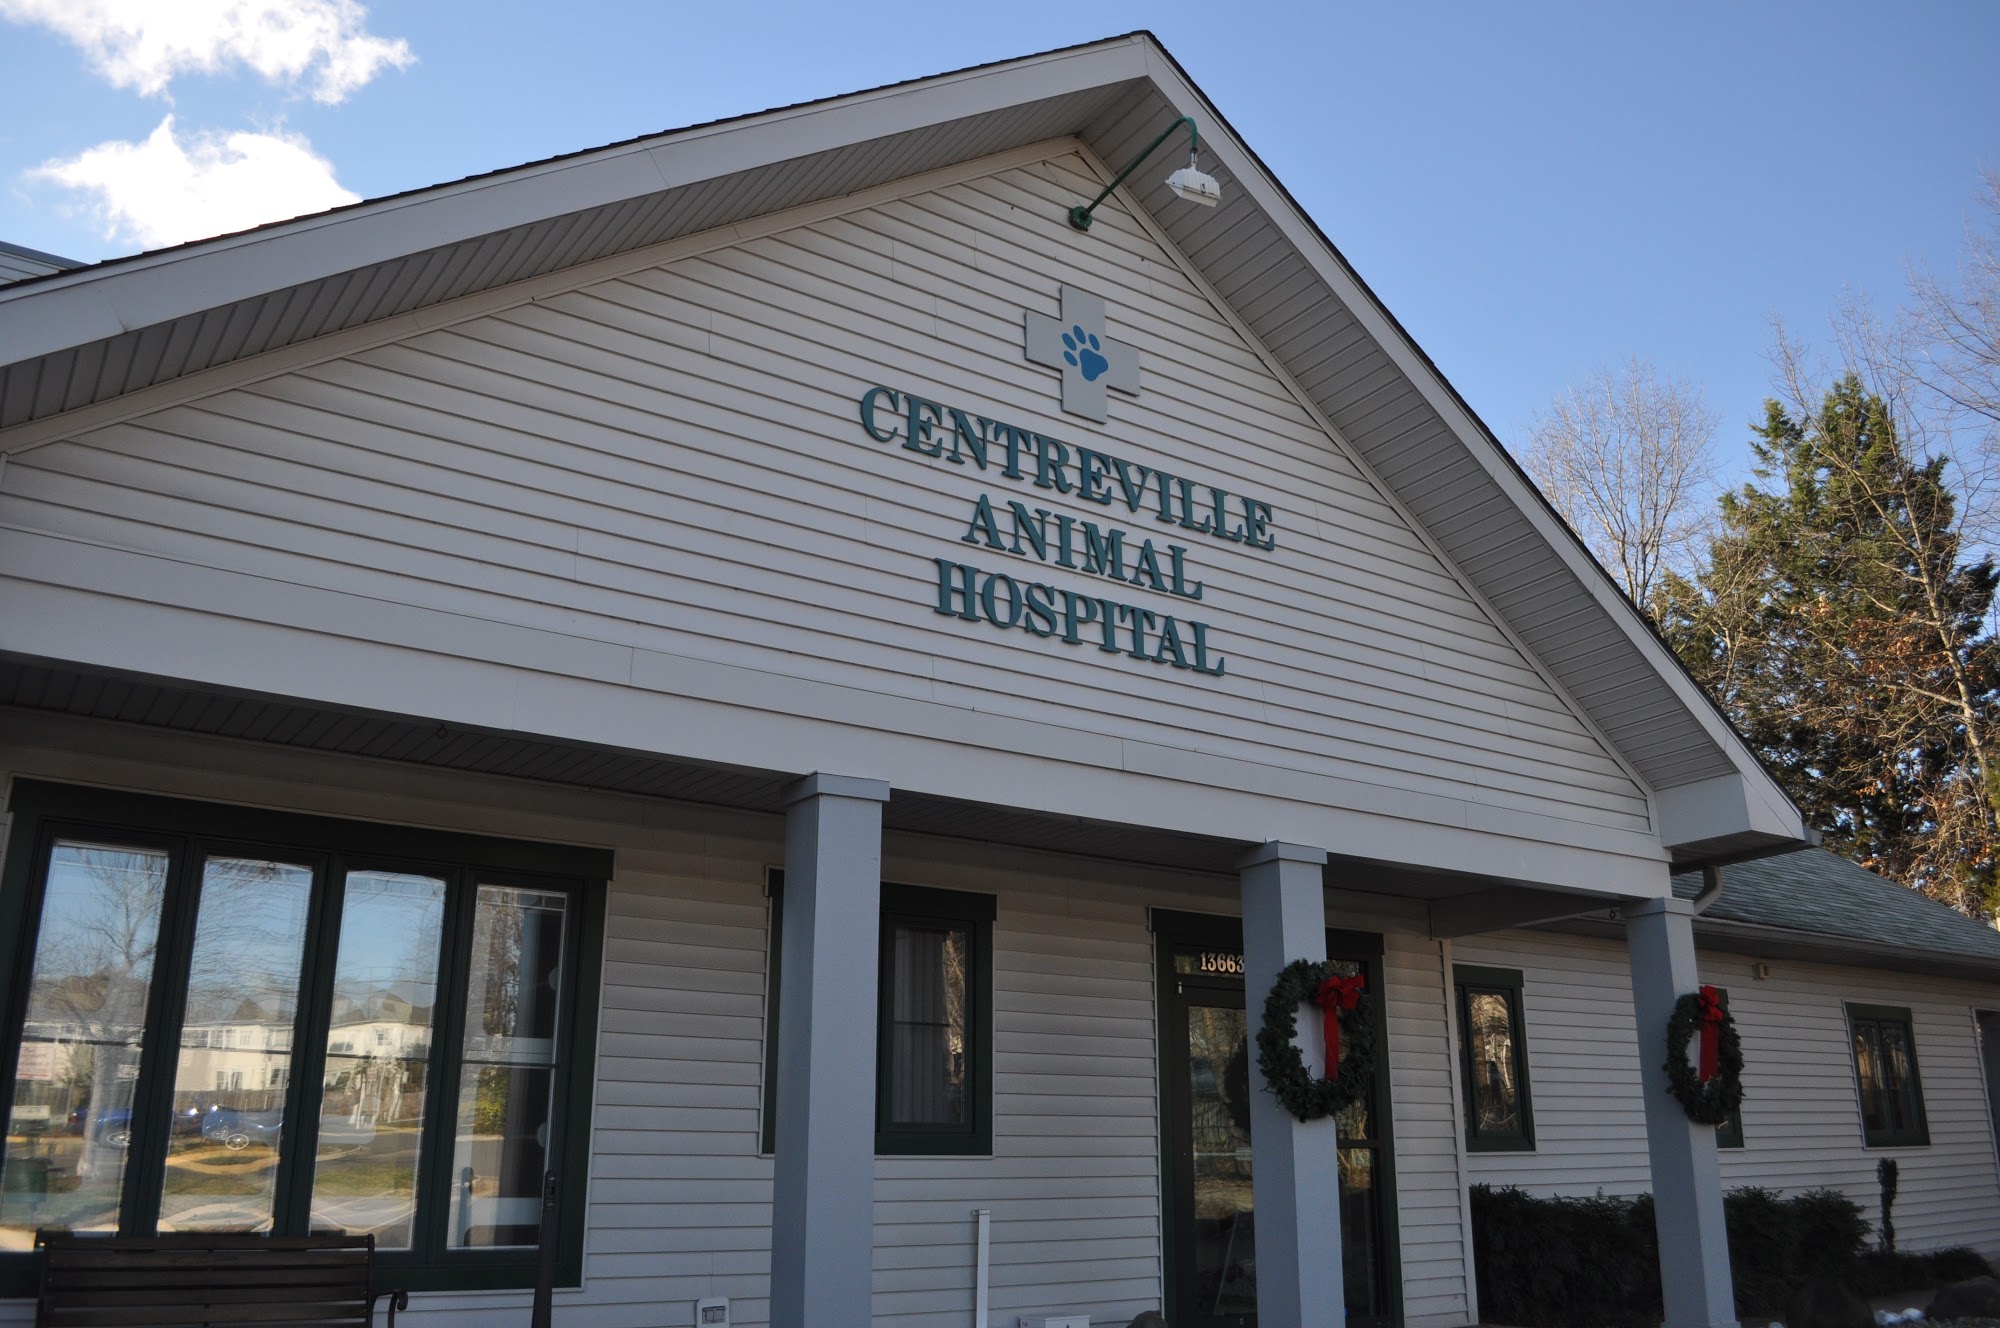 VCA Centreville Animal Hospital